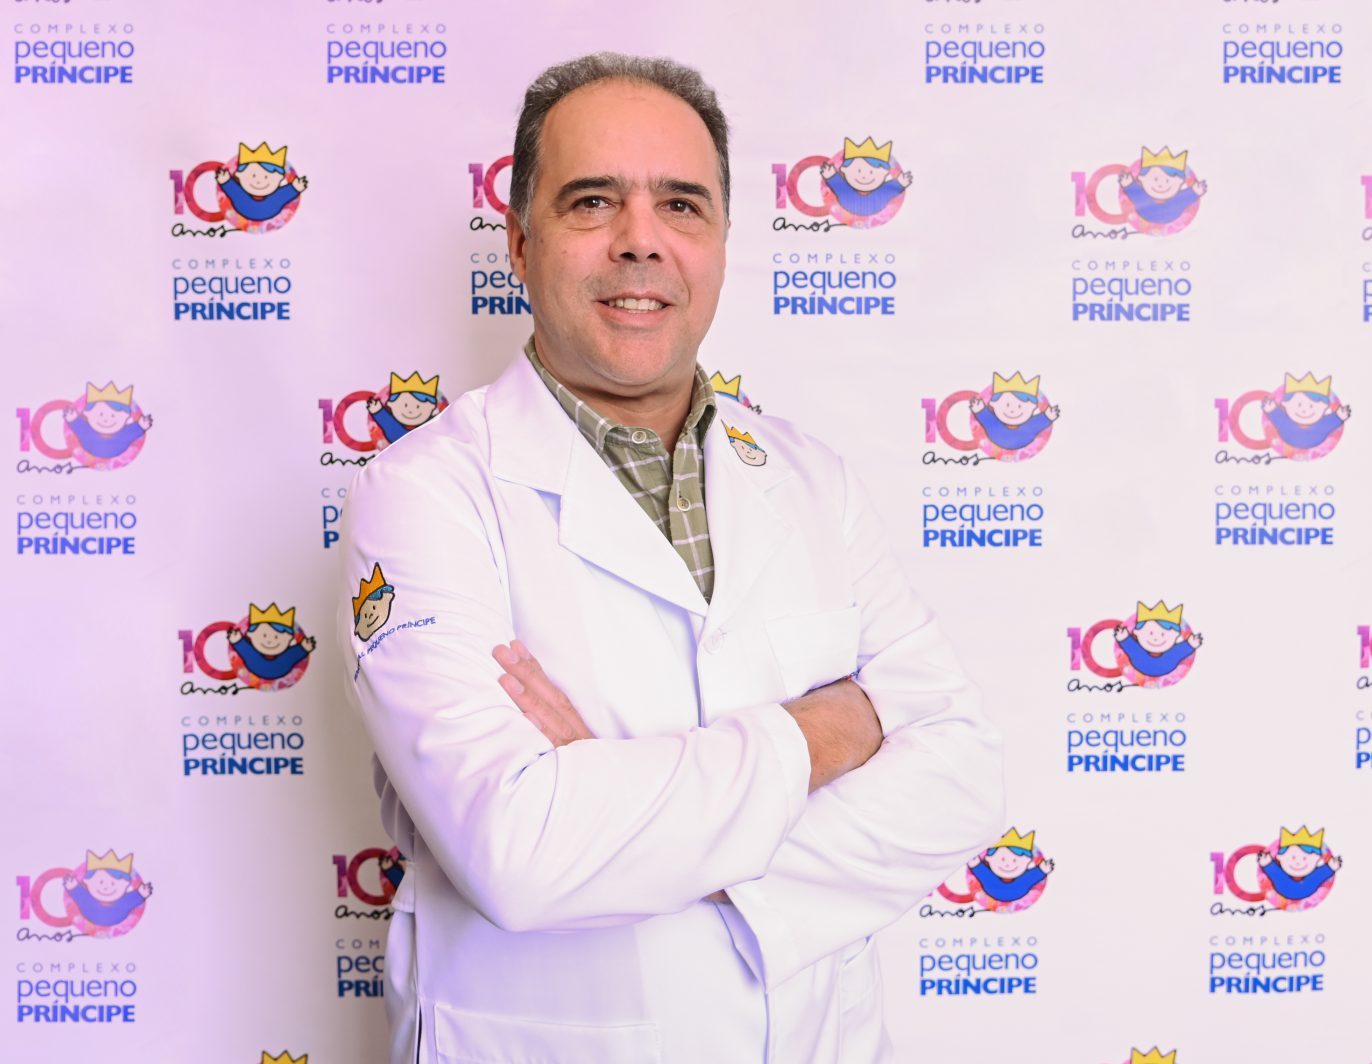 Dr. João Pires de Campos Neto